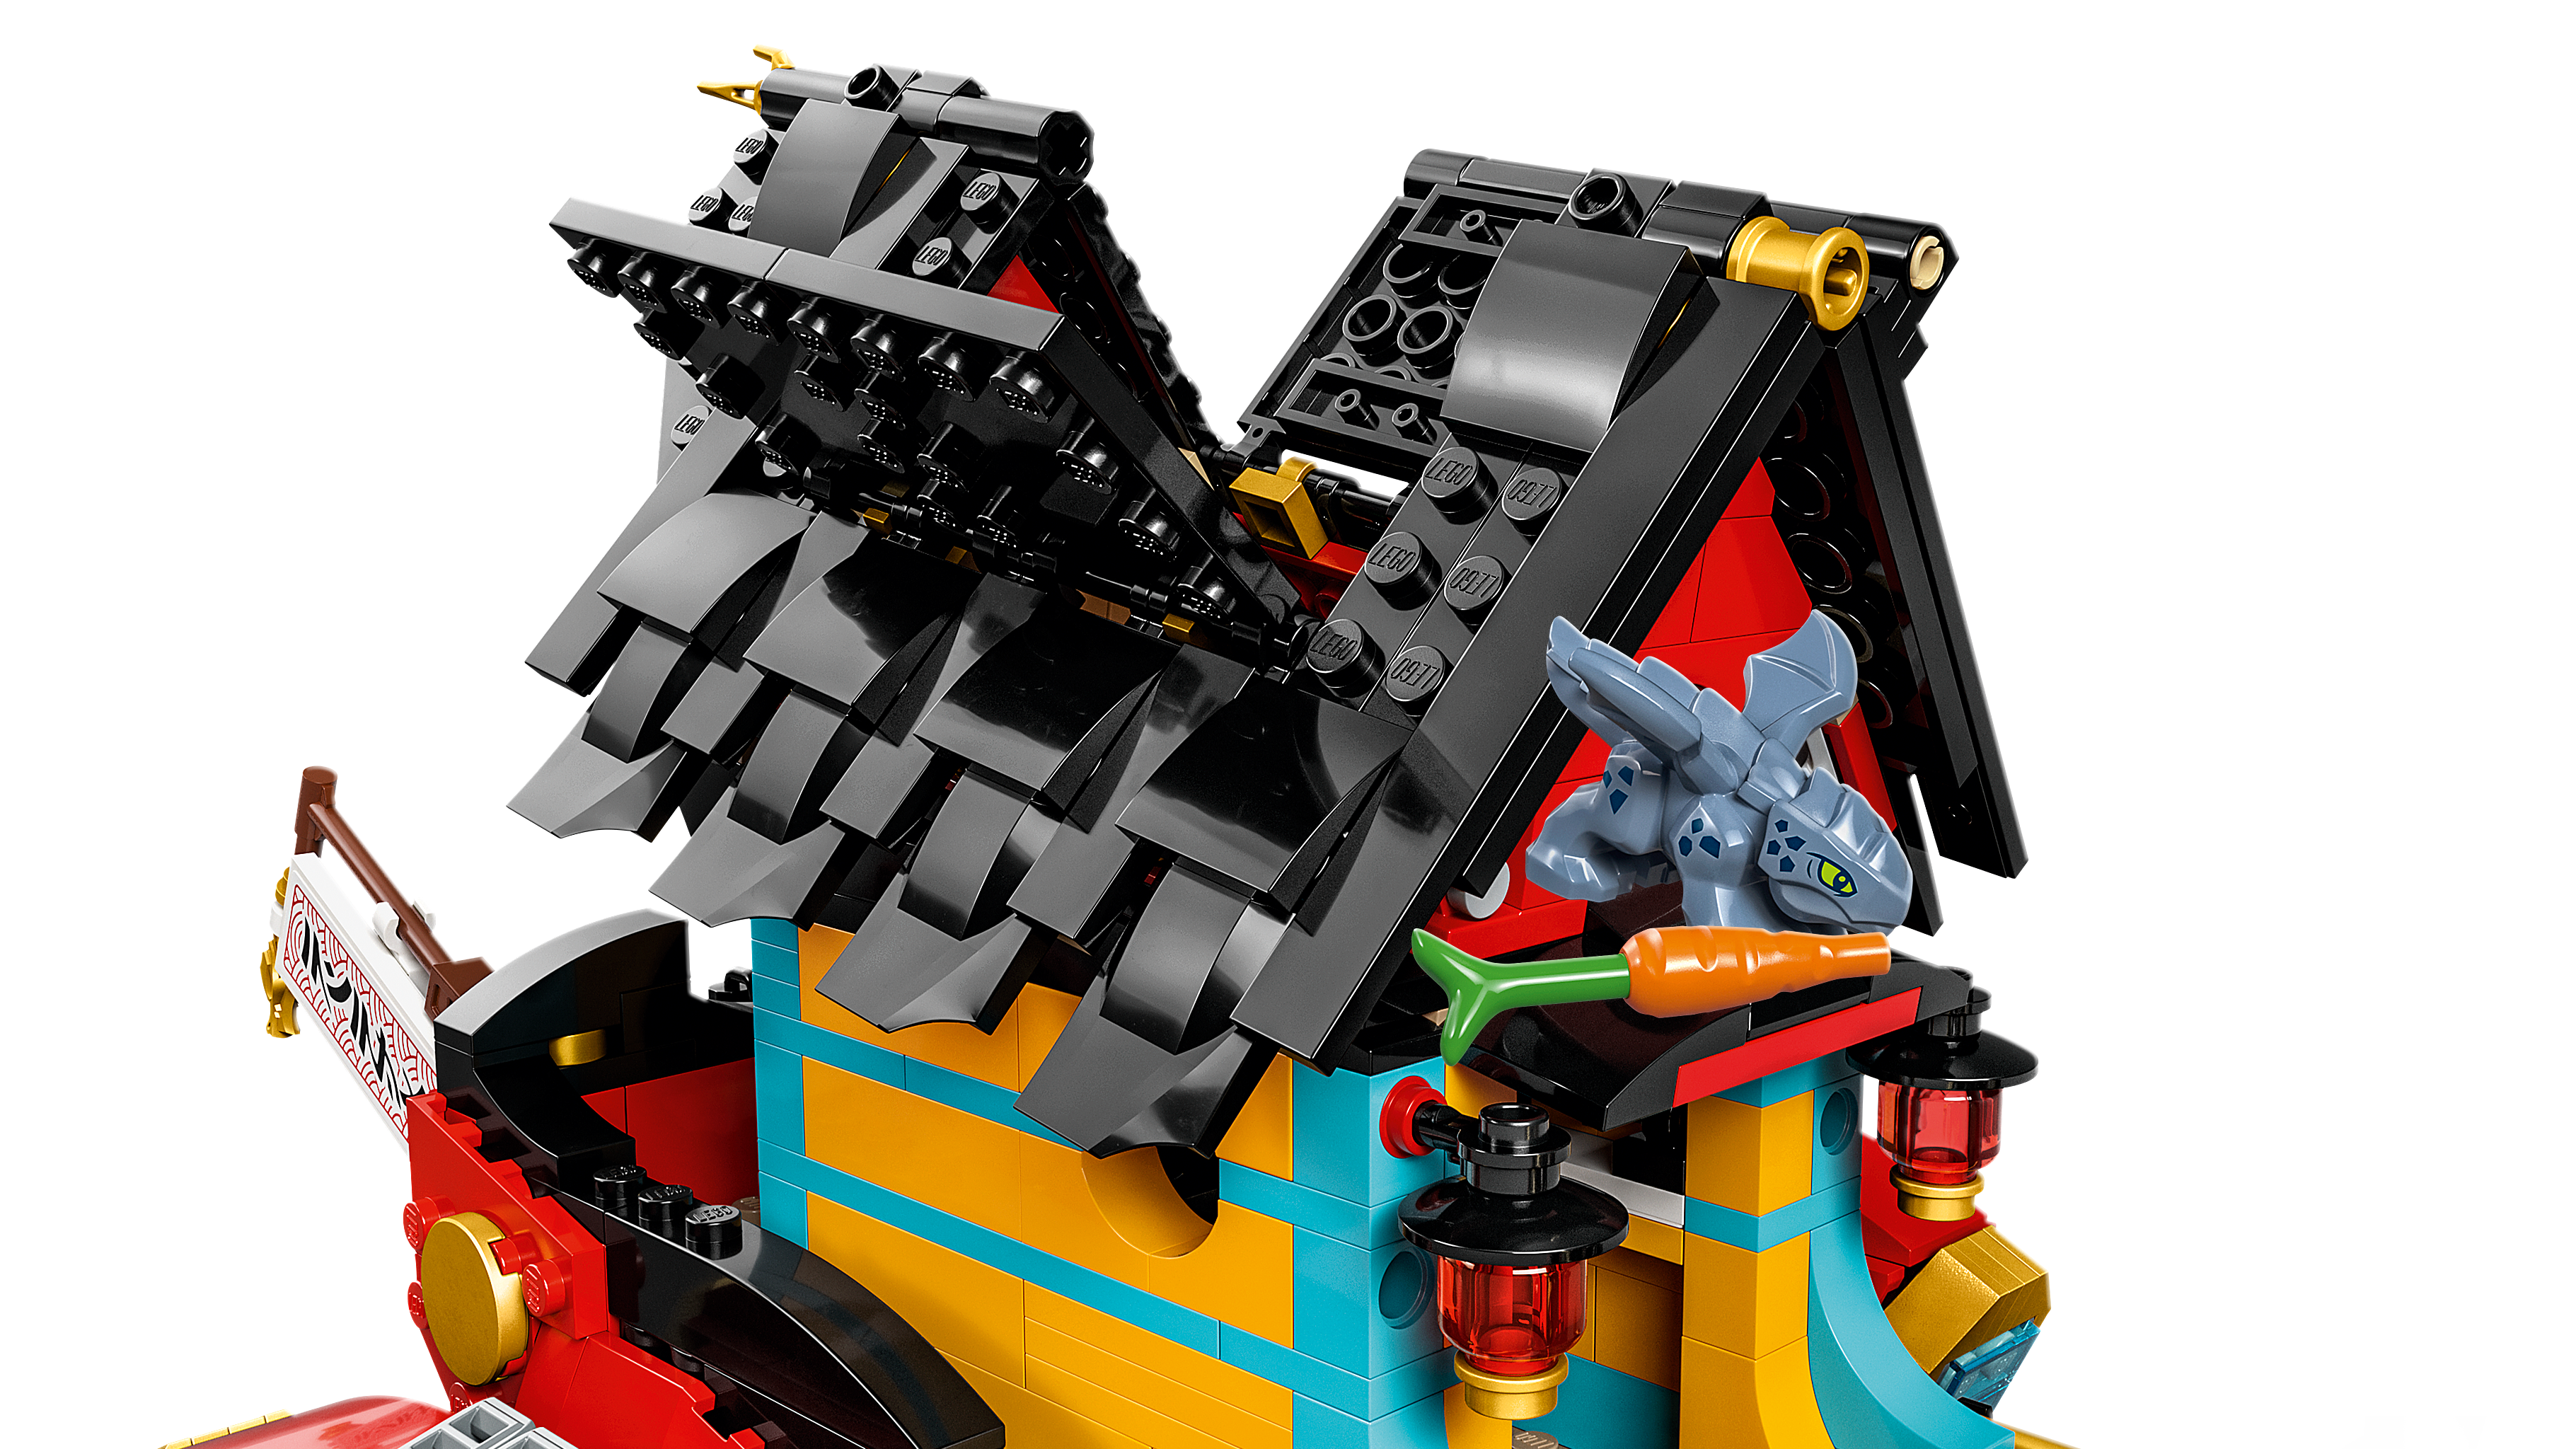 空中戦艦バウンティ号 71797 - レゴ®ニンジャゴー セット - LEGO.comキッズ